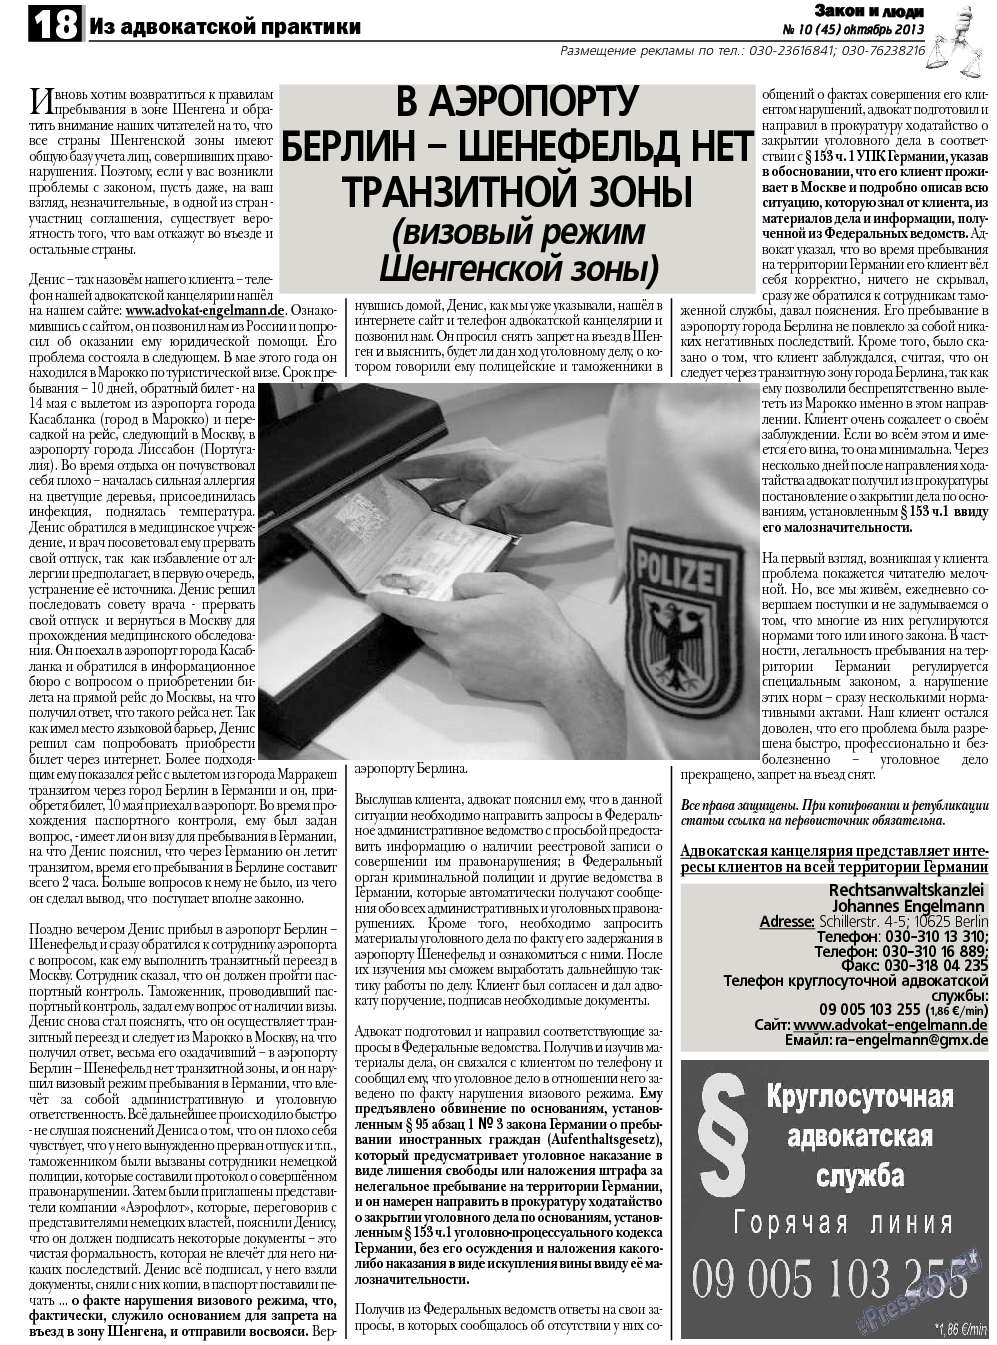 Закон и люди, газета. 2013 №10 стр.18